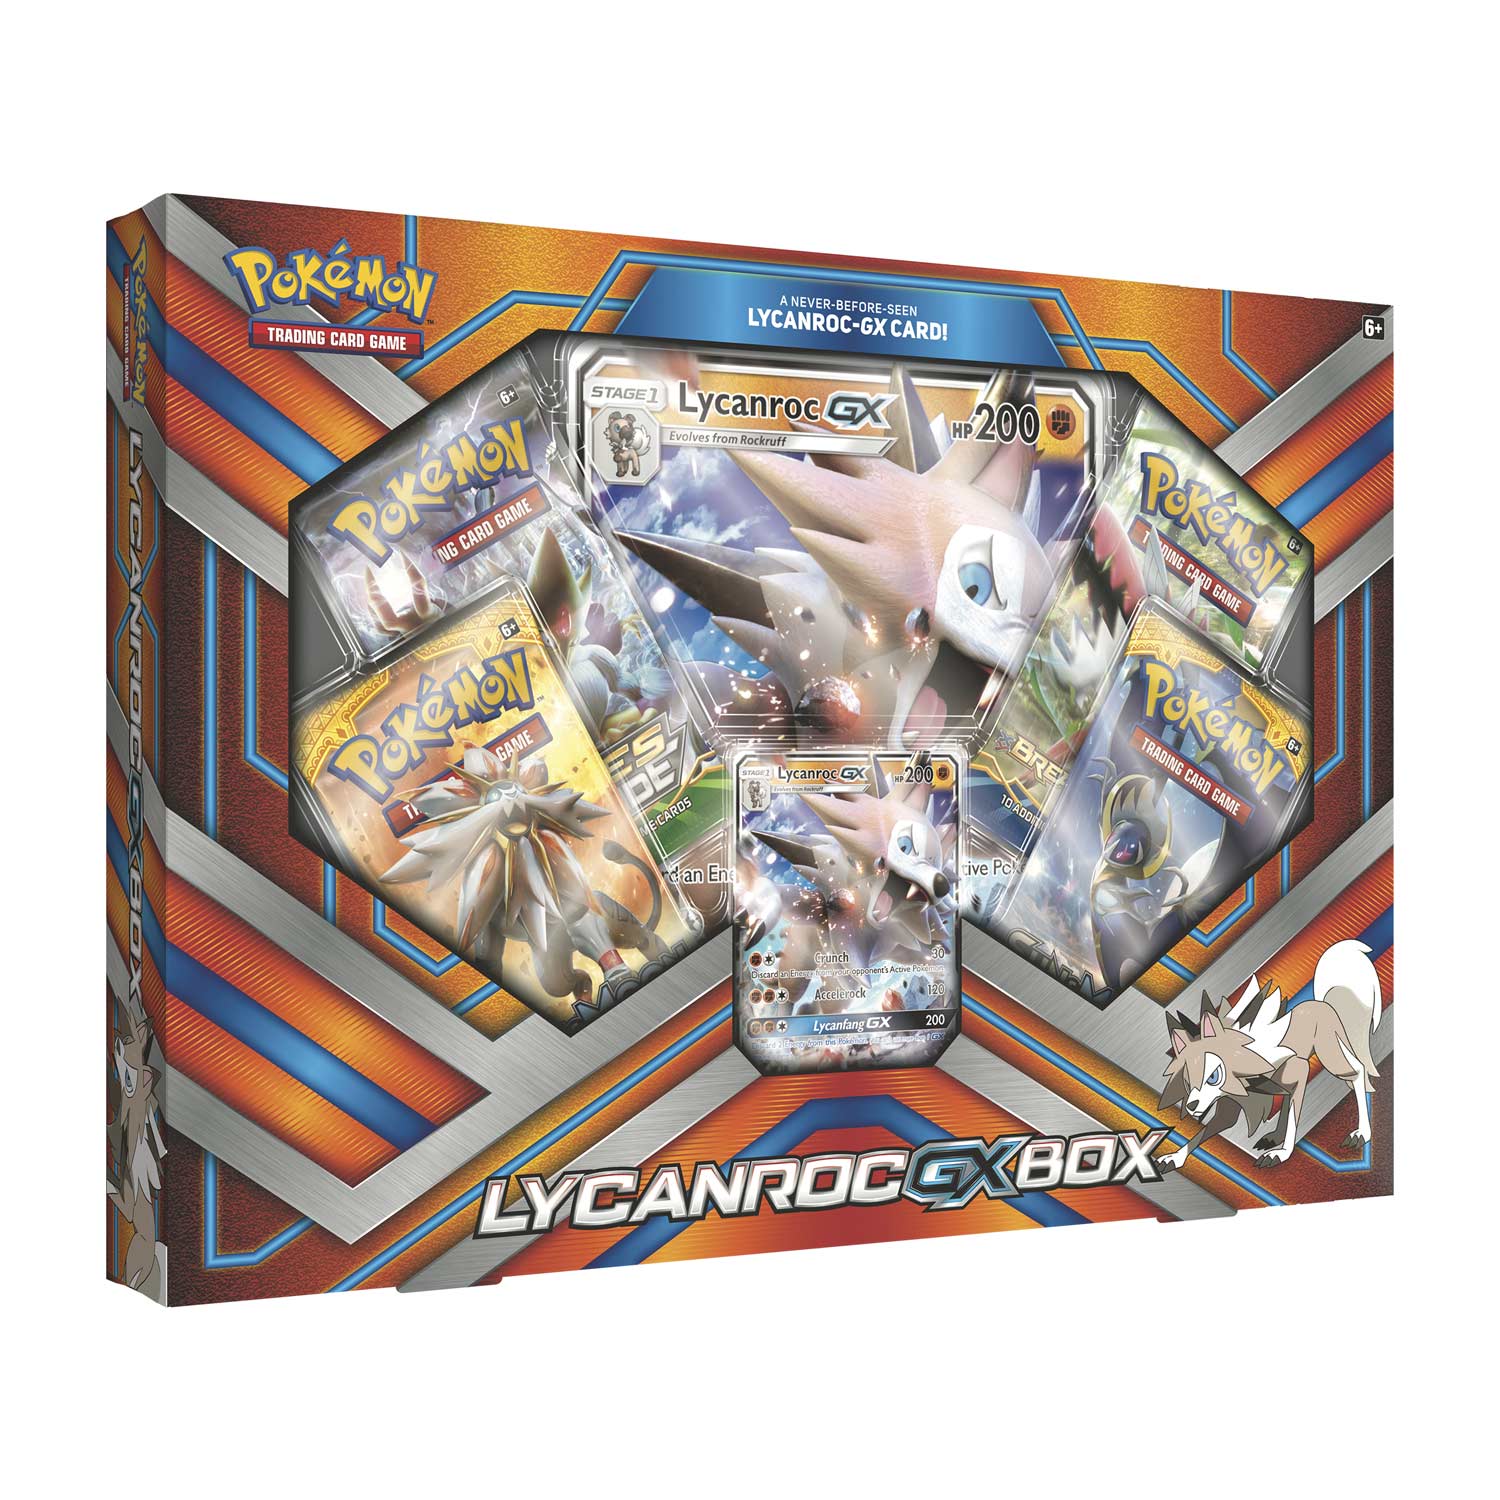 Lycanroc GX Box New Pokemon 2B3 Pokemon 